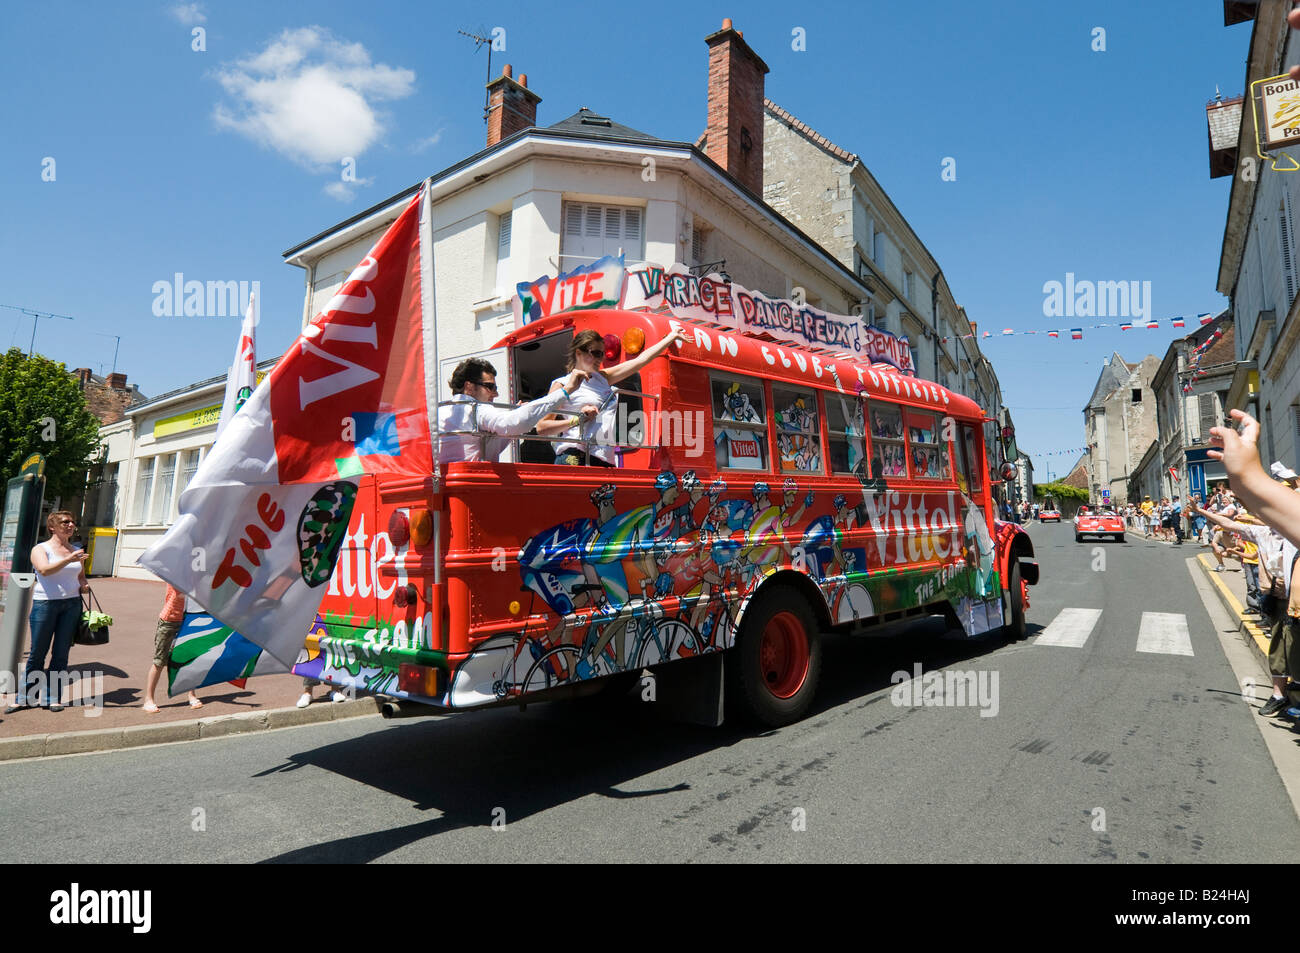 Tour de France 2008 - caravane reconvertie (American school bus) parrainé par "Vittel" l'eau de source, France. Banque D'Images